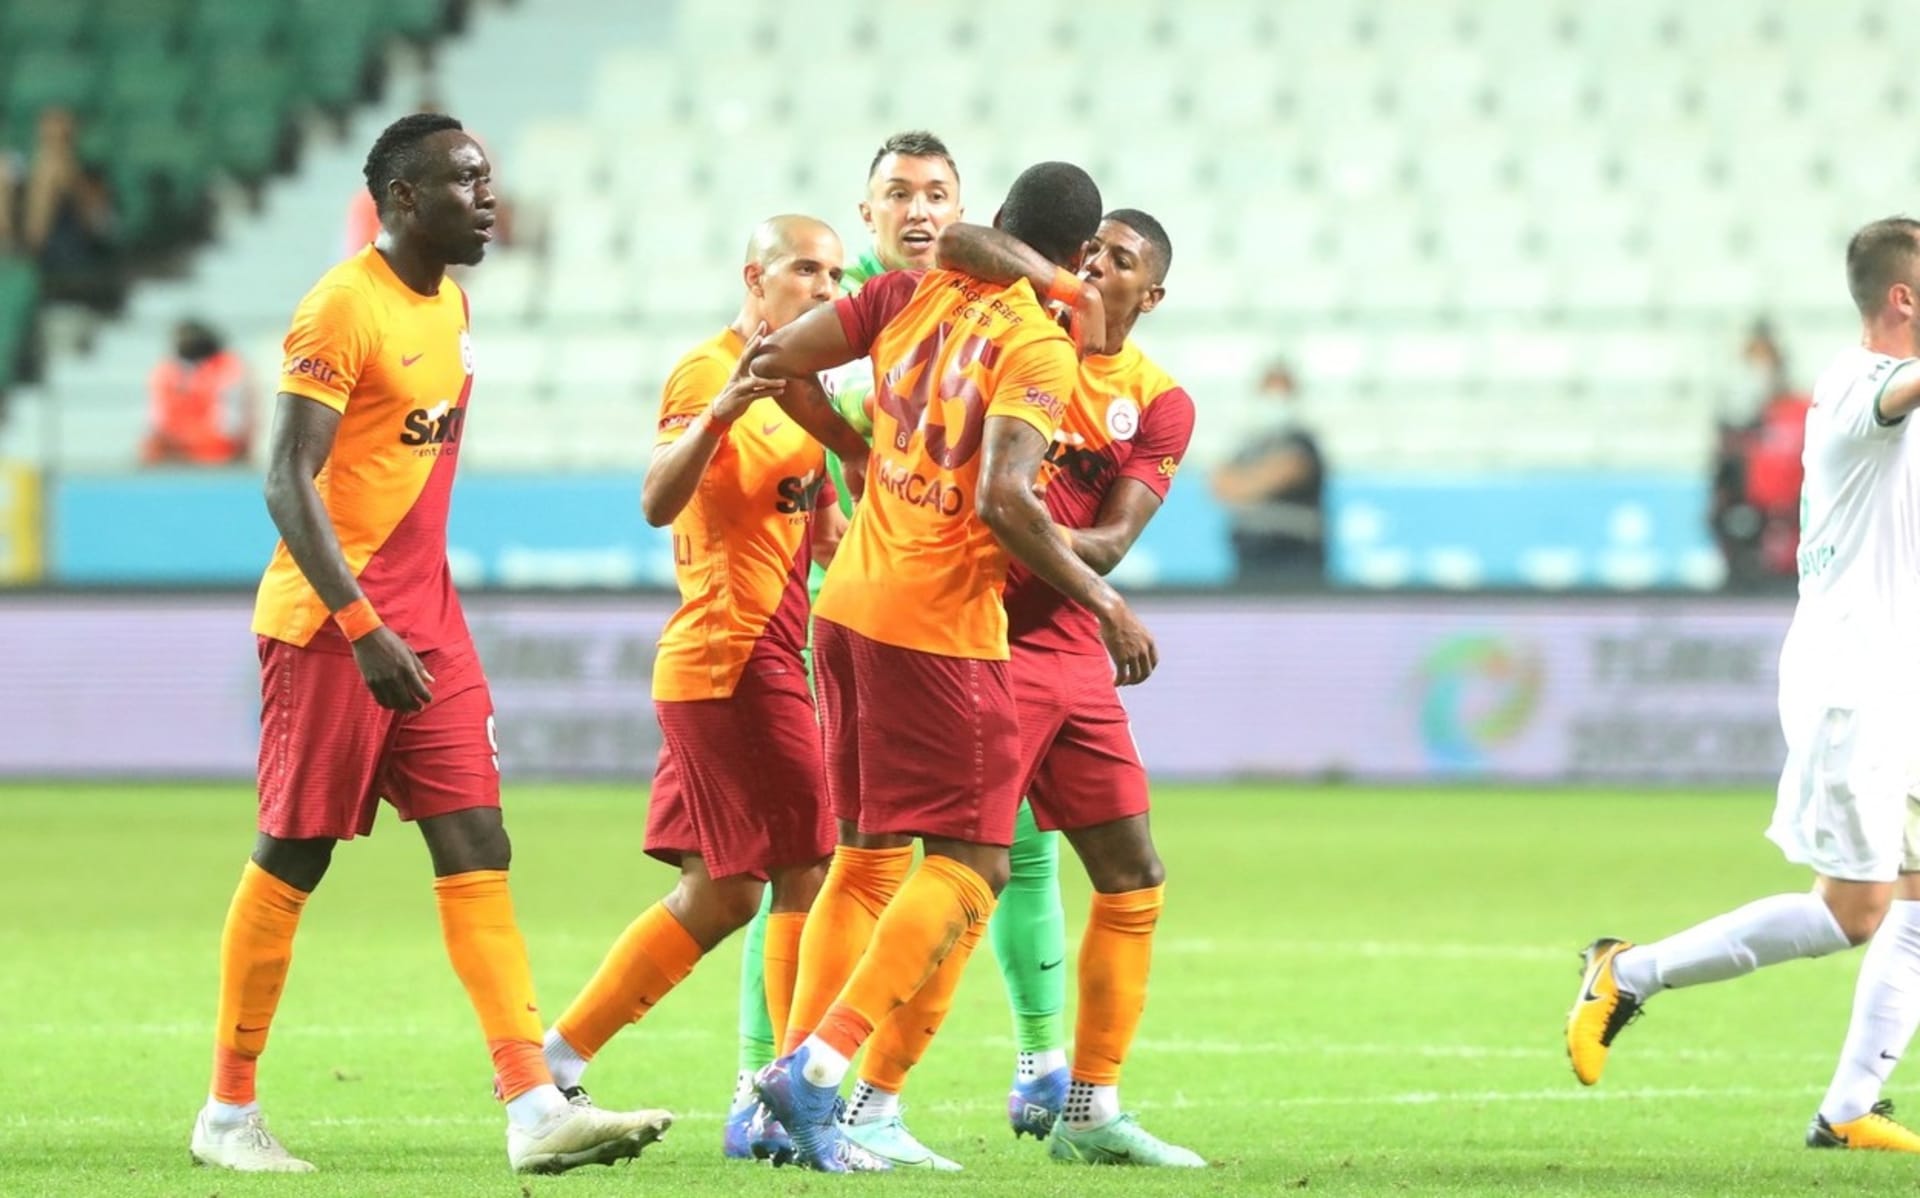 Roztržka v týmu Galatasaraye, kterou způsobil brazilský stoper Marcão.